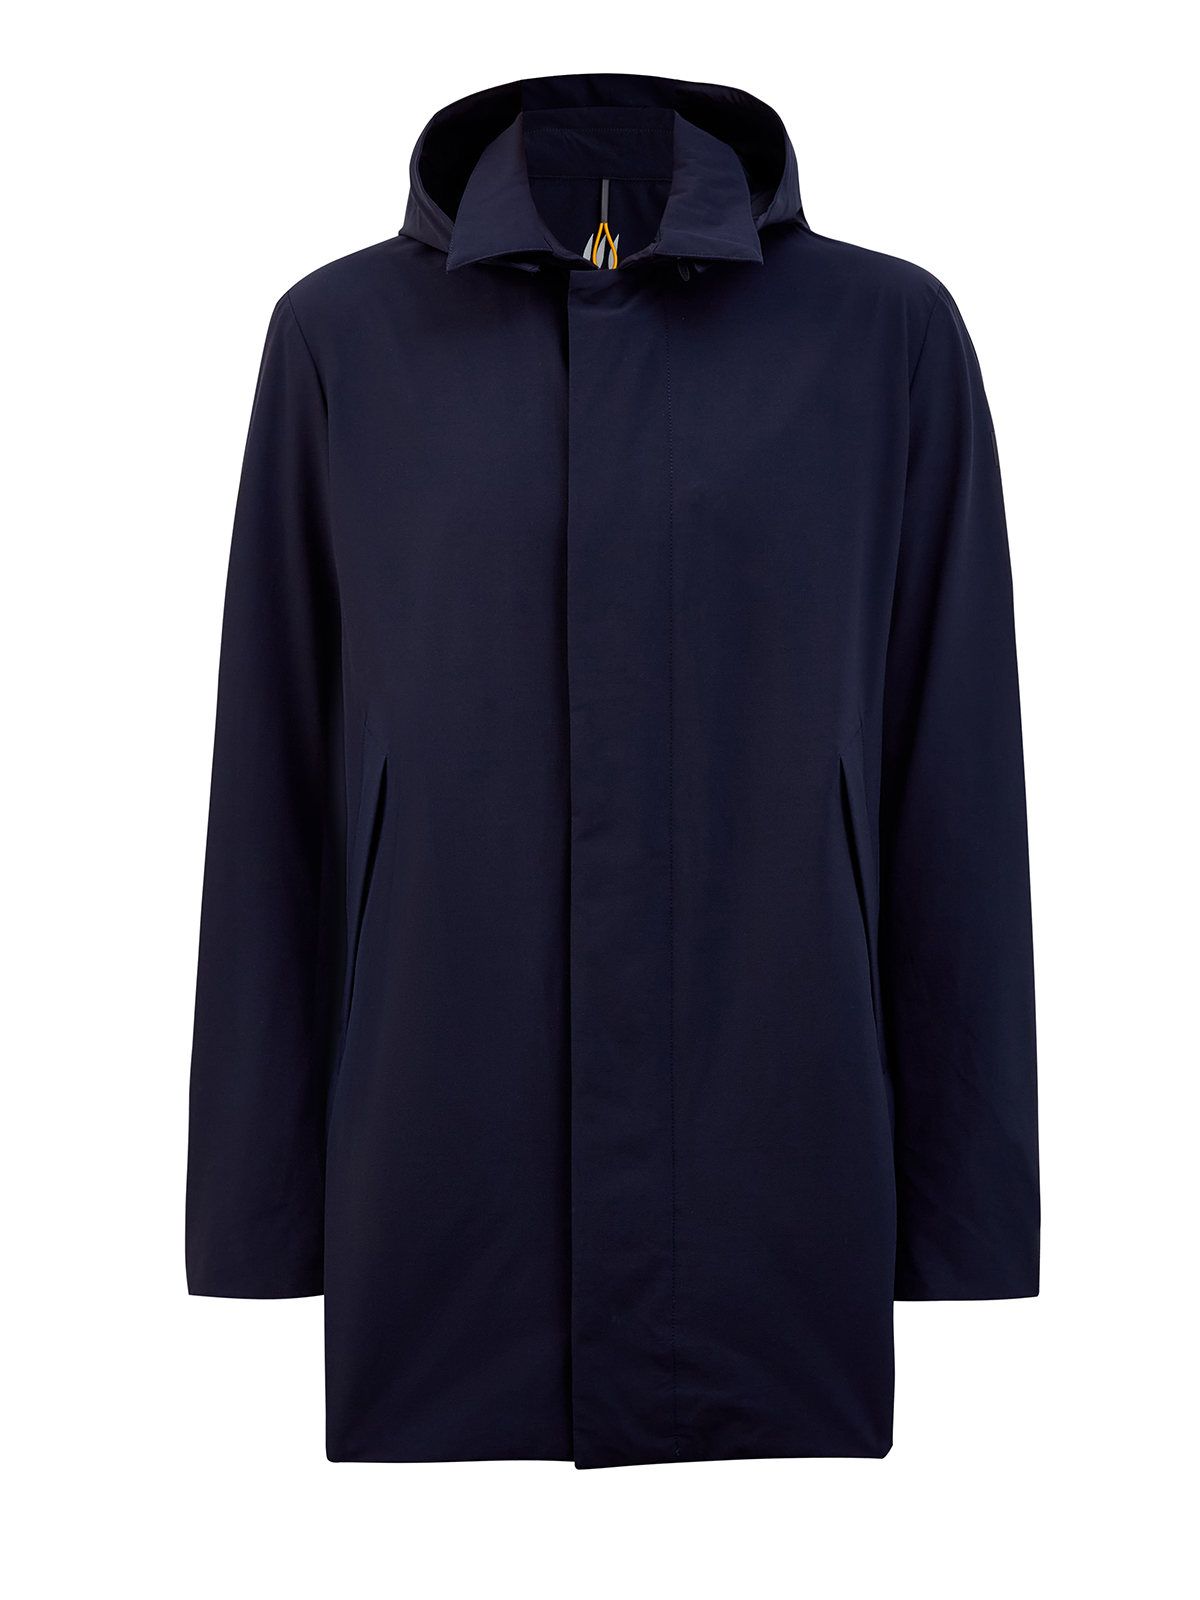 Куртка с классическим отложным воротом и съемным капюшоном на молнии HETREGO, цвет синий, размер L;XL;2XL;3XL;4XL;5XL